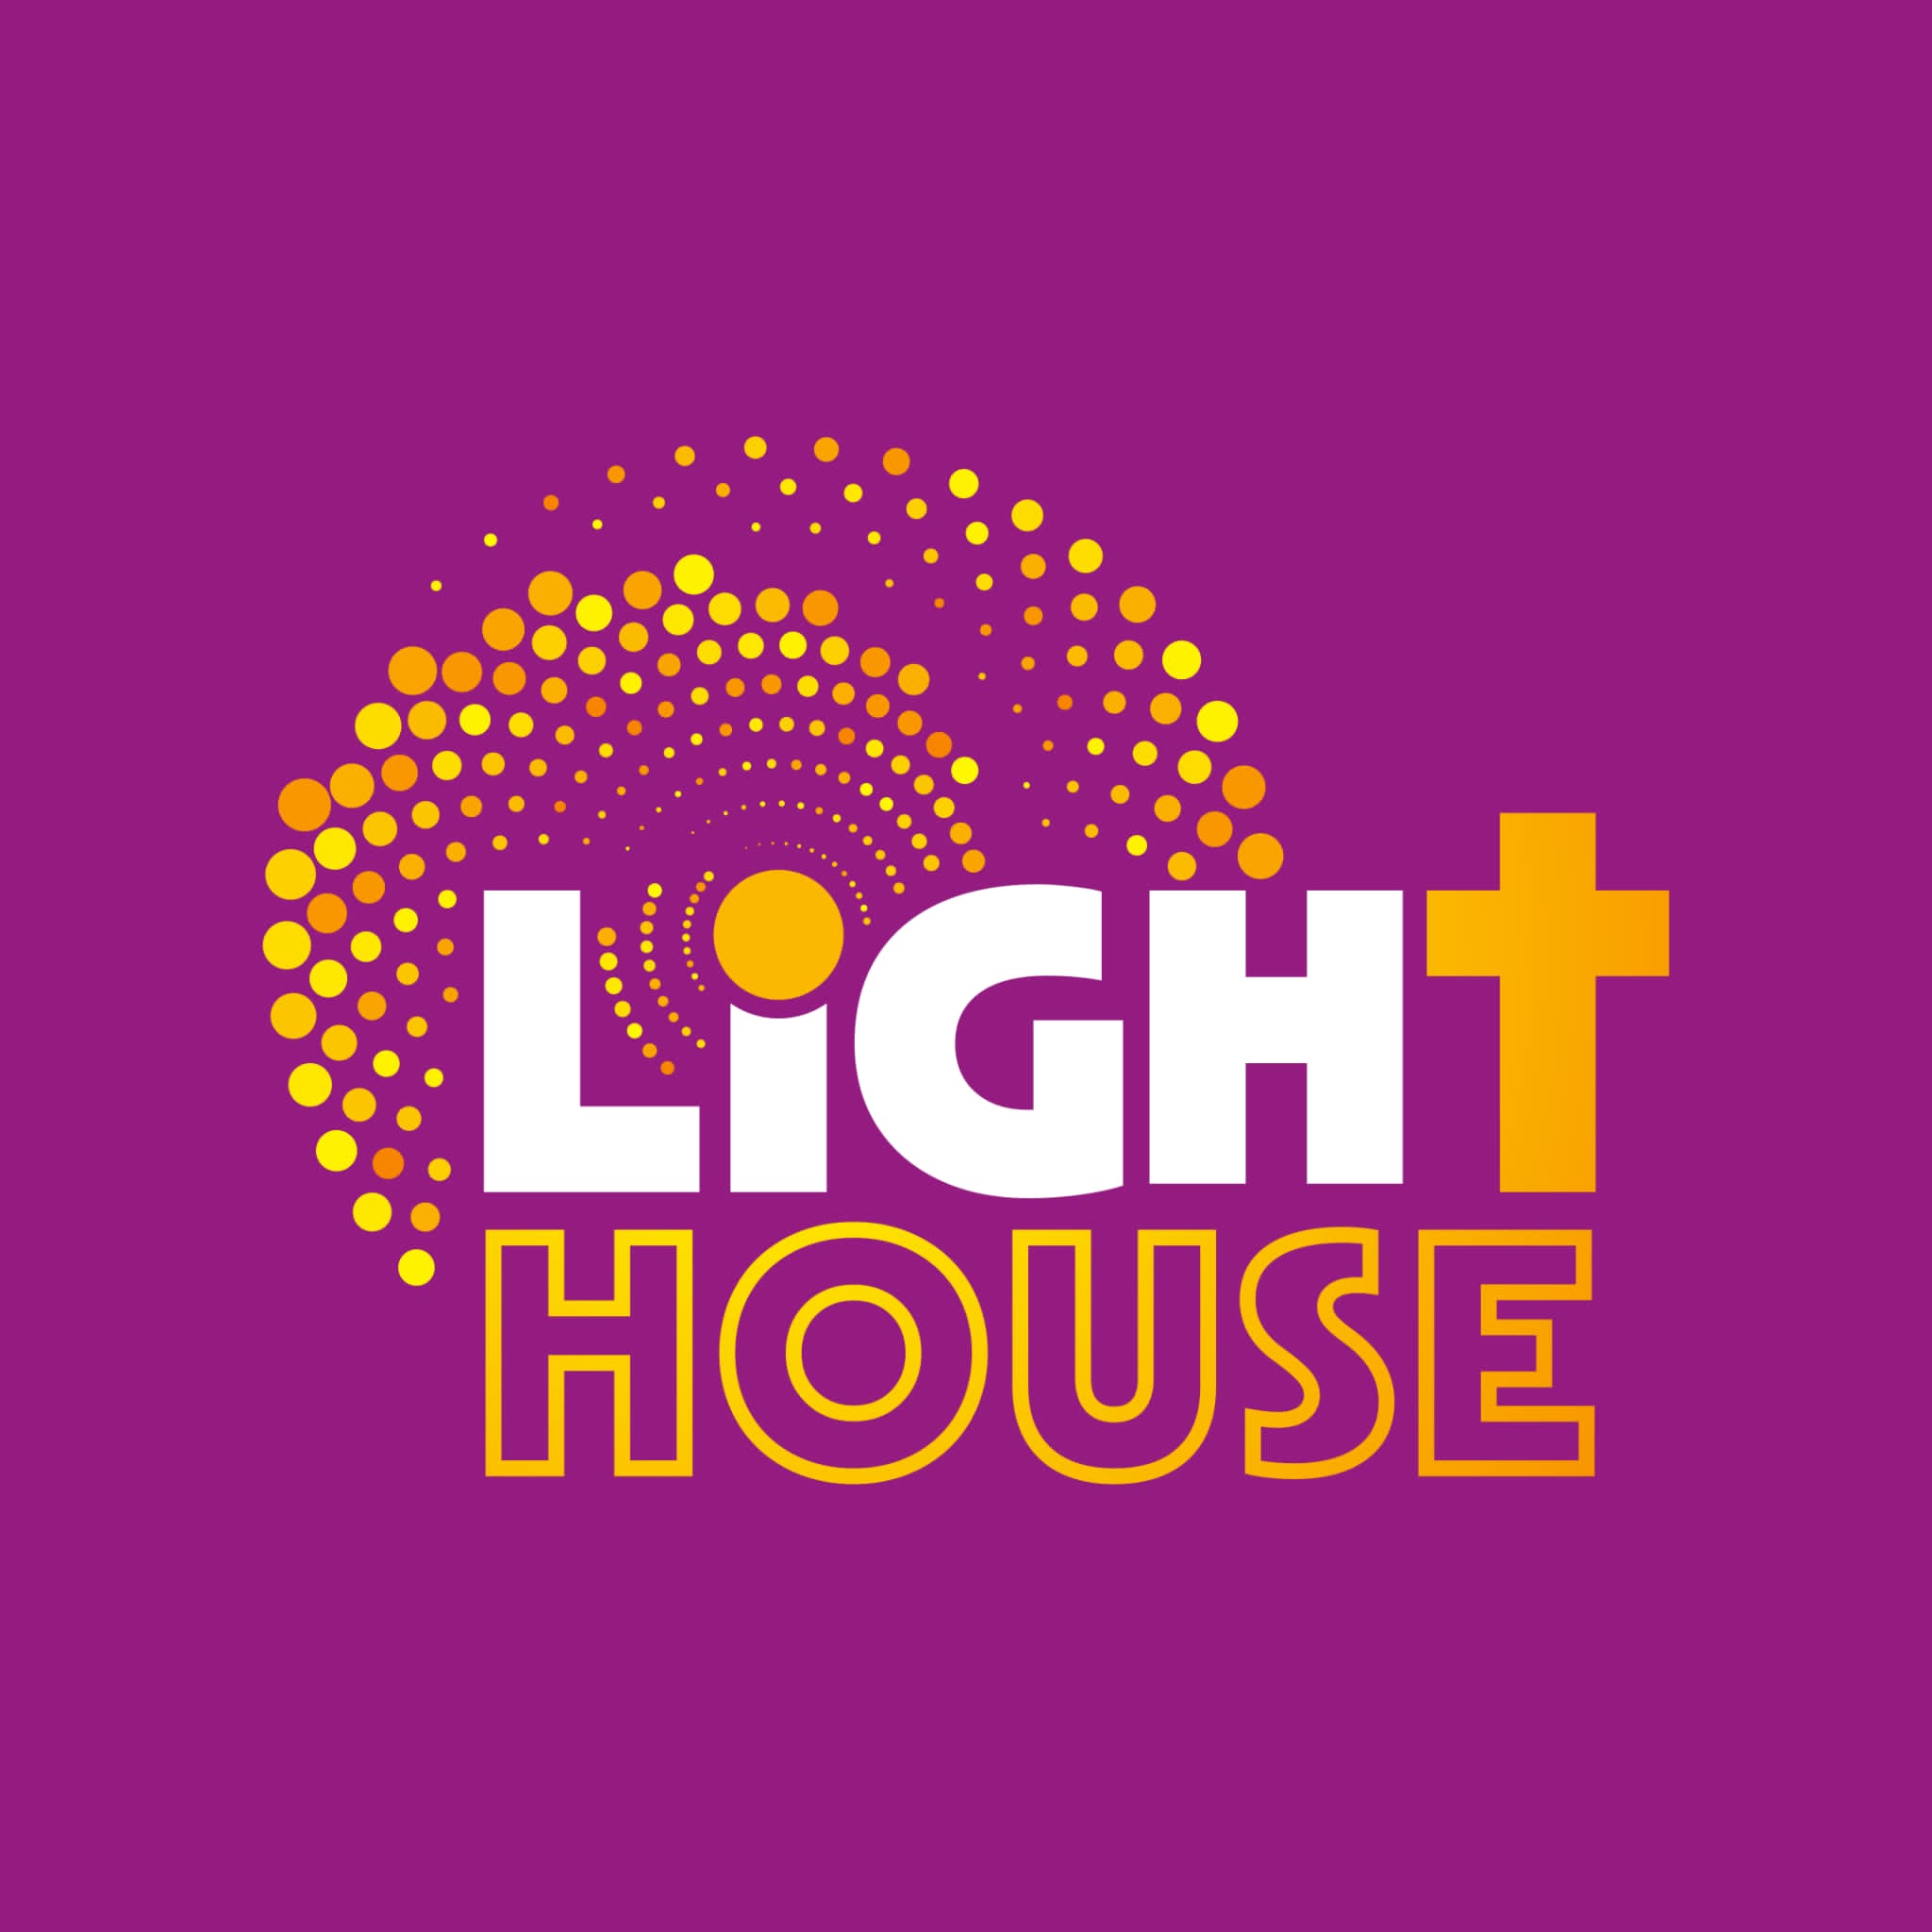 Lighthose logo